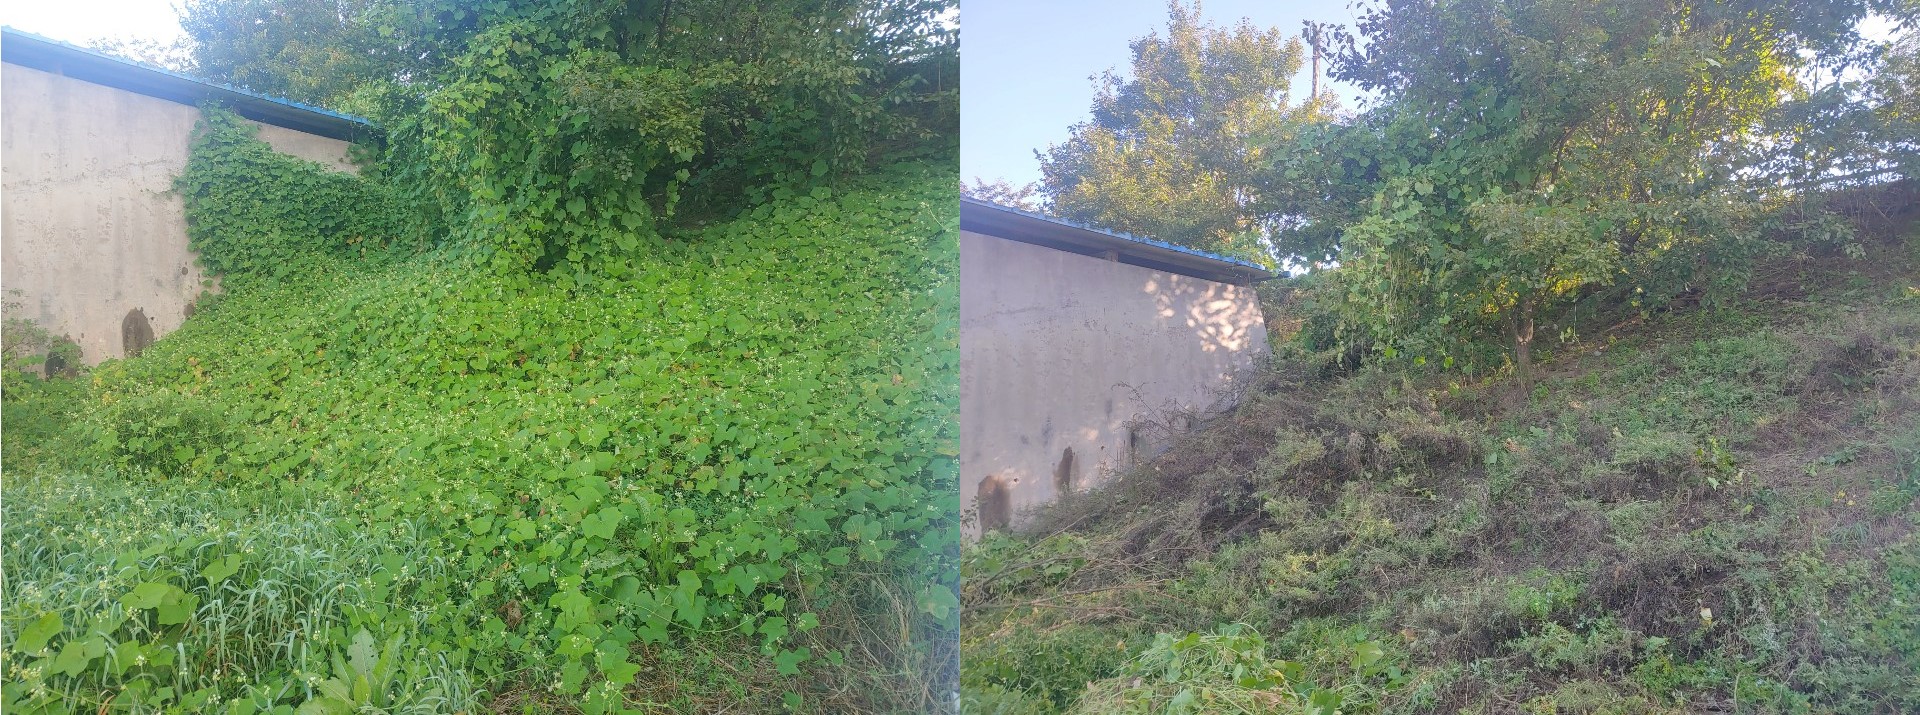 한강유역환경청이 지난 2021년 경기도 양평군 지역의 생태계 교란 식물 제거사업을 추진하기 전(왼쪽)과 후(오른쪽)의 모습1